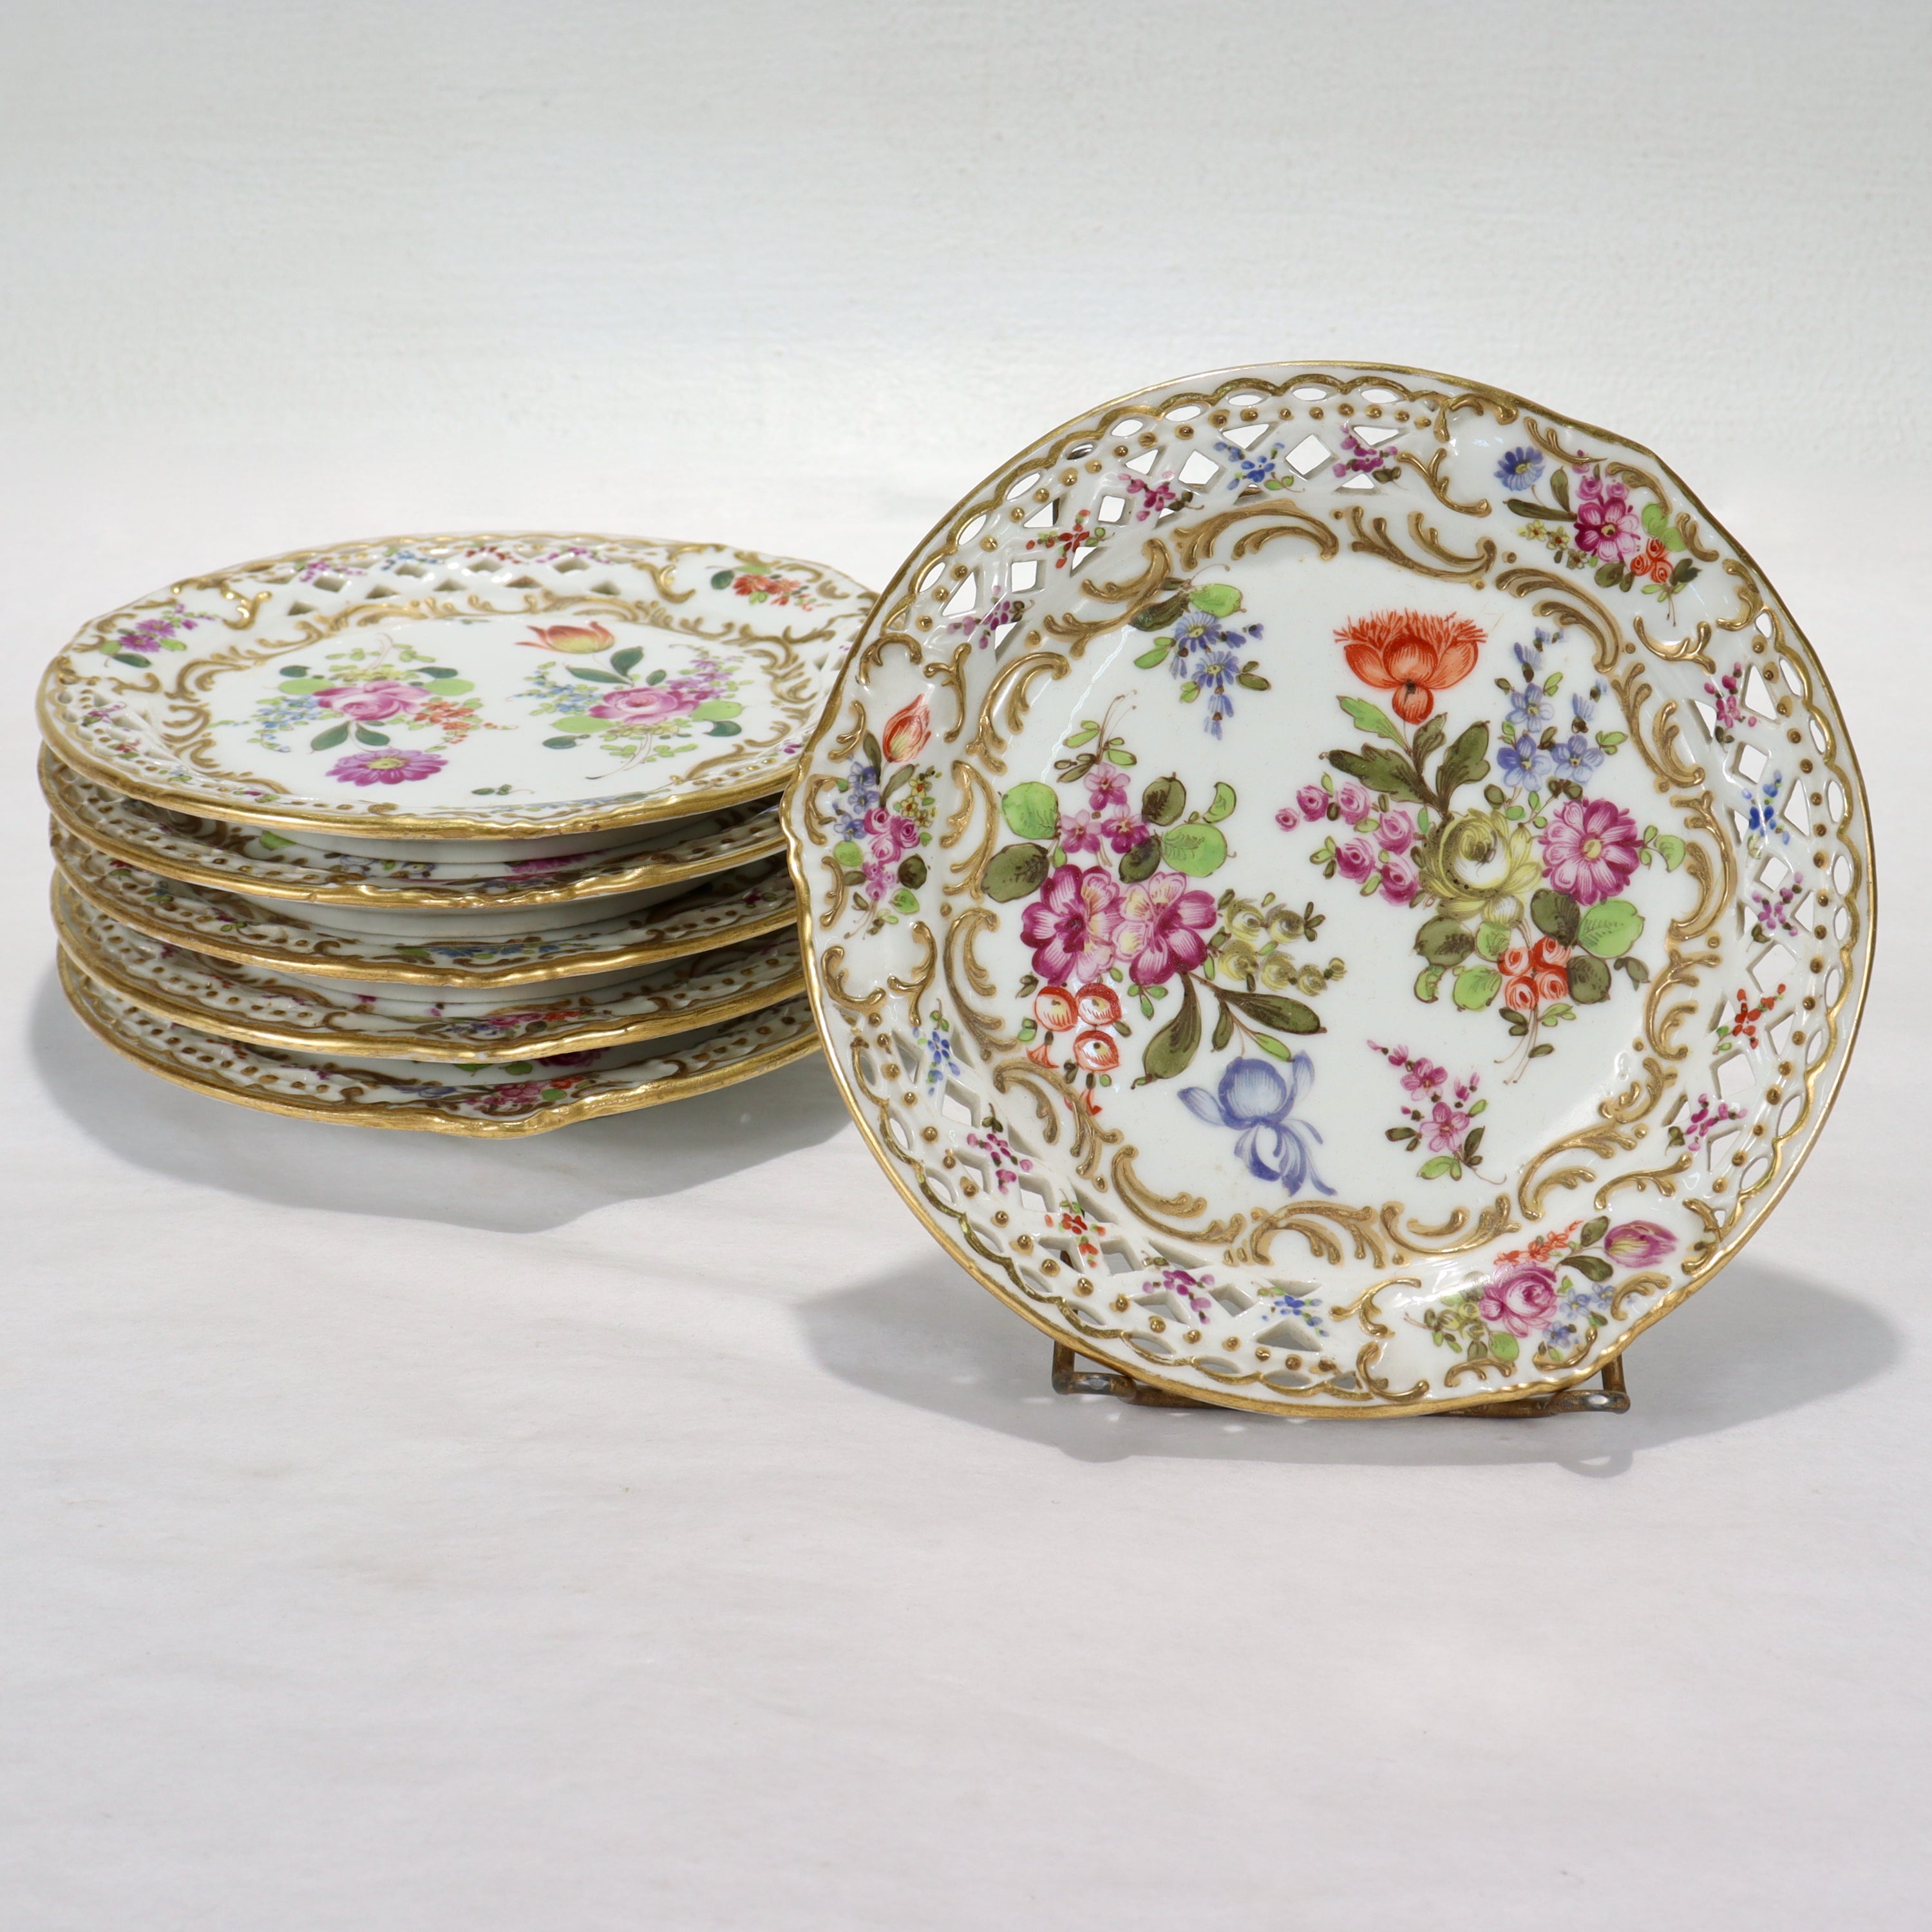 Un ensemble de 6 assiettes en porcelaine fine réticulée française.

Par Bloch & Bourdois.

Décorée sur toute sa surface de gerbes florales, d'or en relief, de rehauts dorés et d'un bord réticulé.

Tout simplement un superbe ensemble